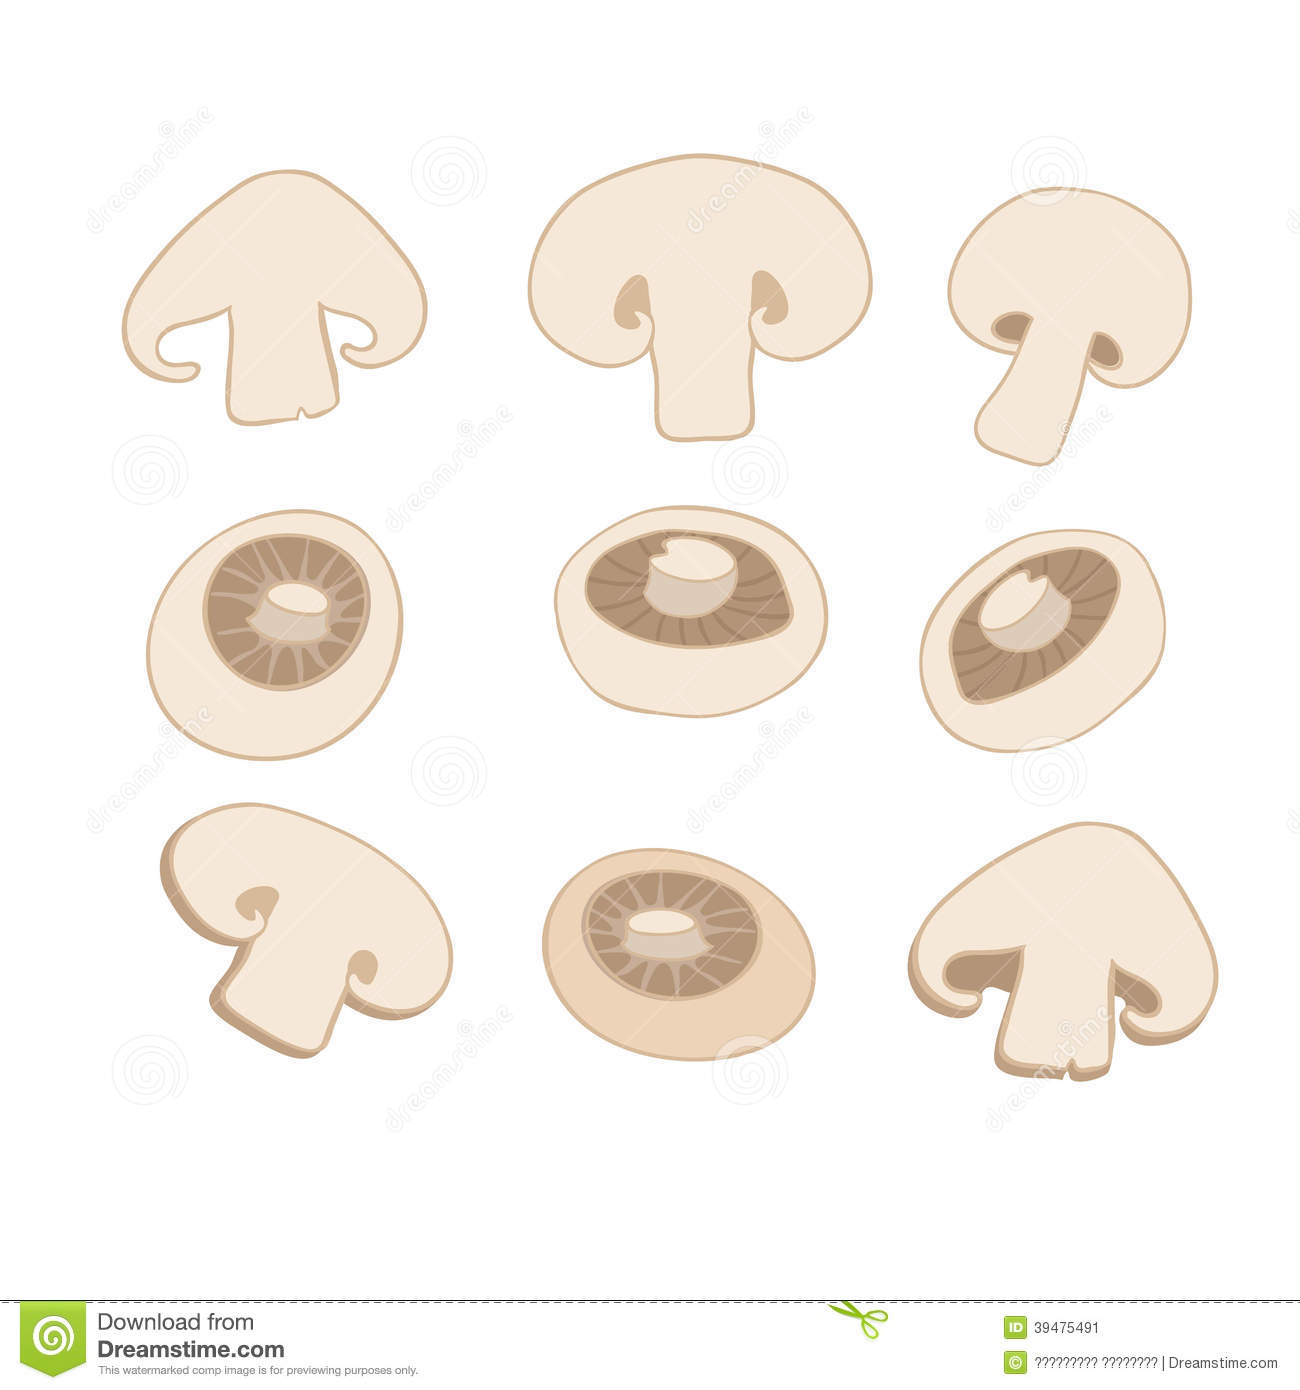 mushroom clipart sliced mushroom